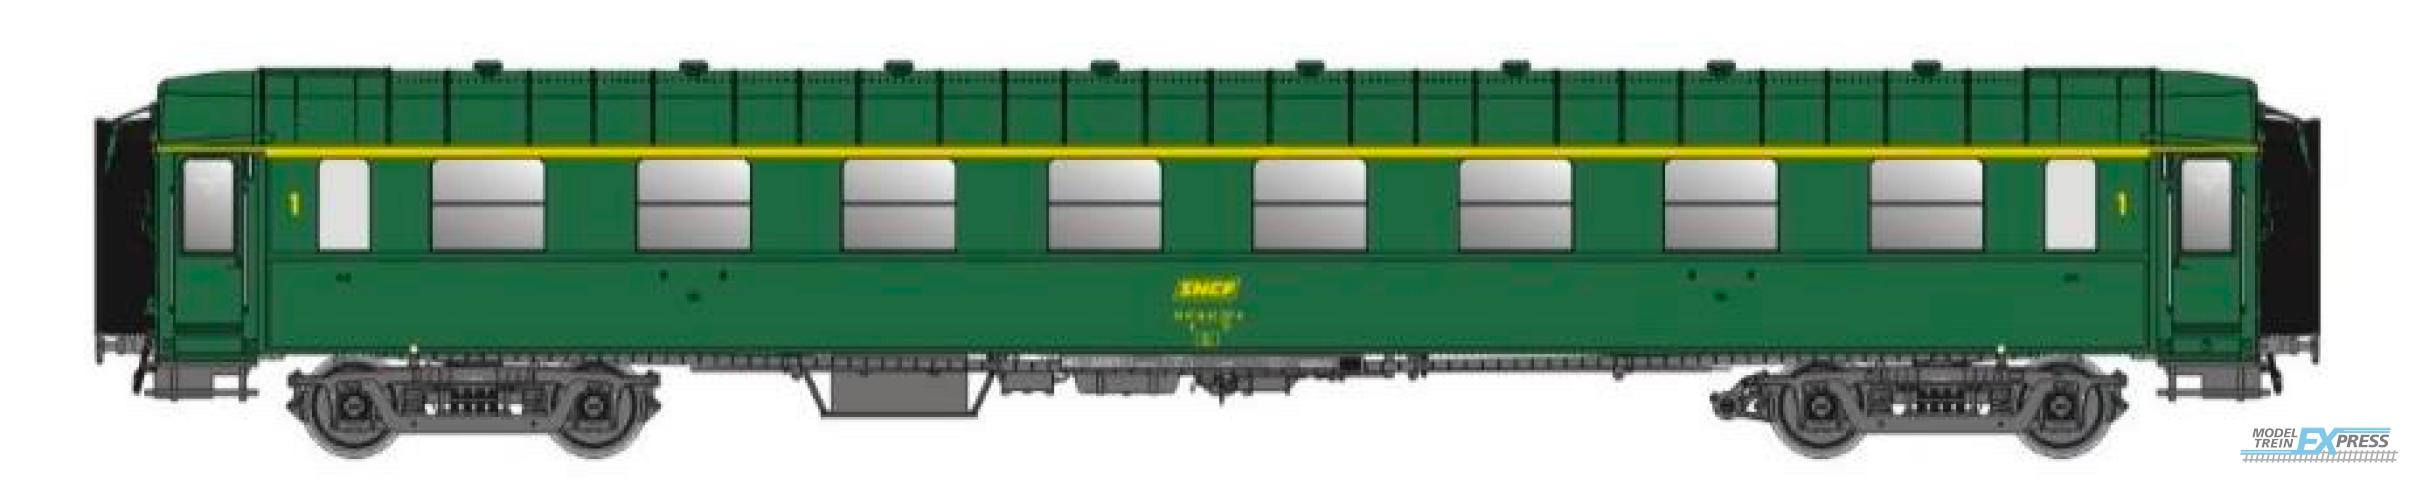 LS Models 40942 OCEM, groen, A8, onderstel grijs, dak en uiteinden groen, / Ep. IVA / SNCF / HO / DC / 1 P.